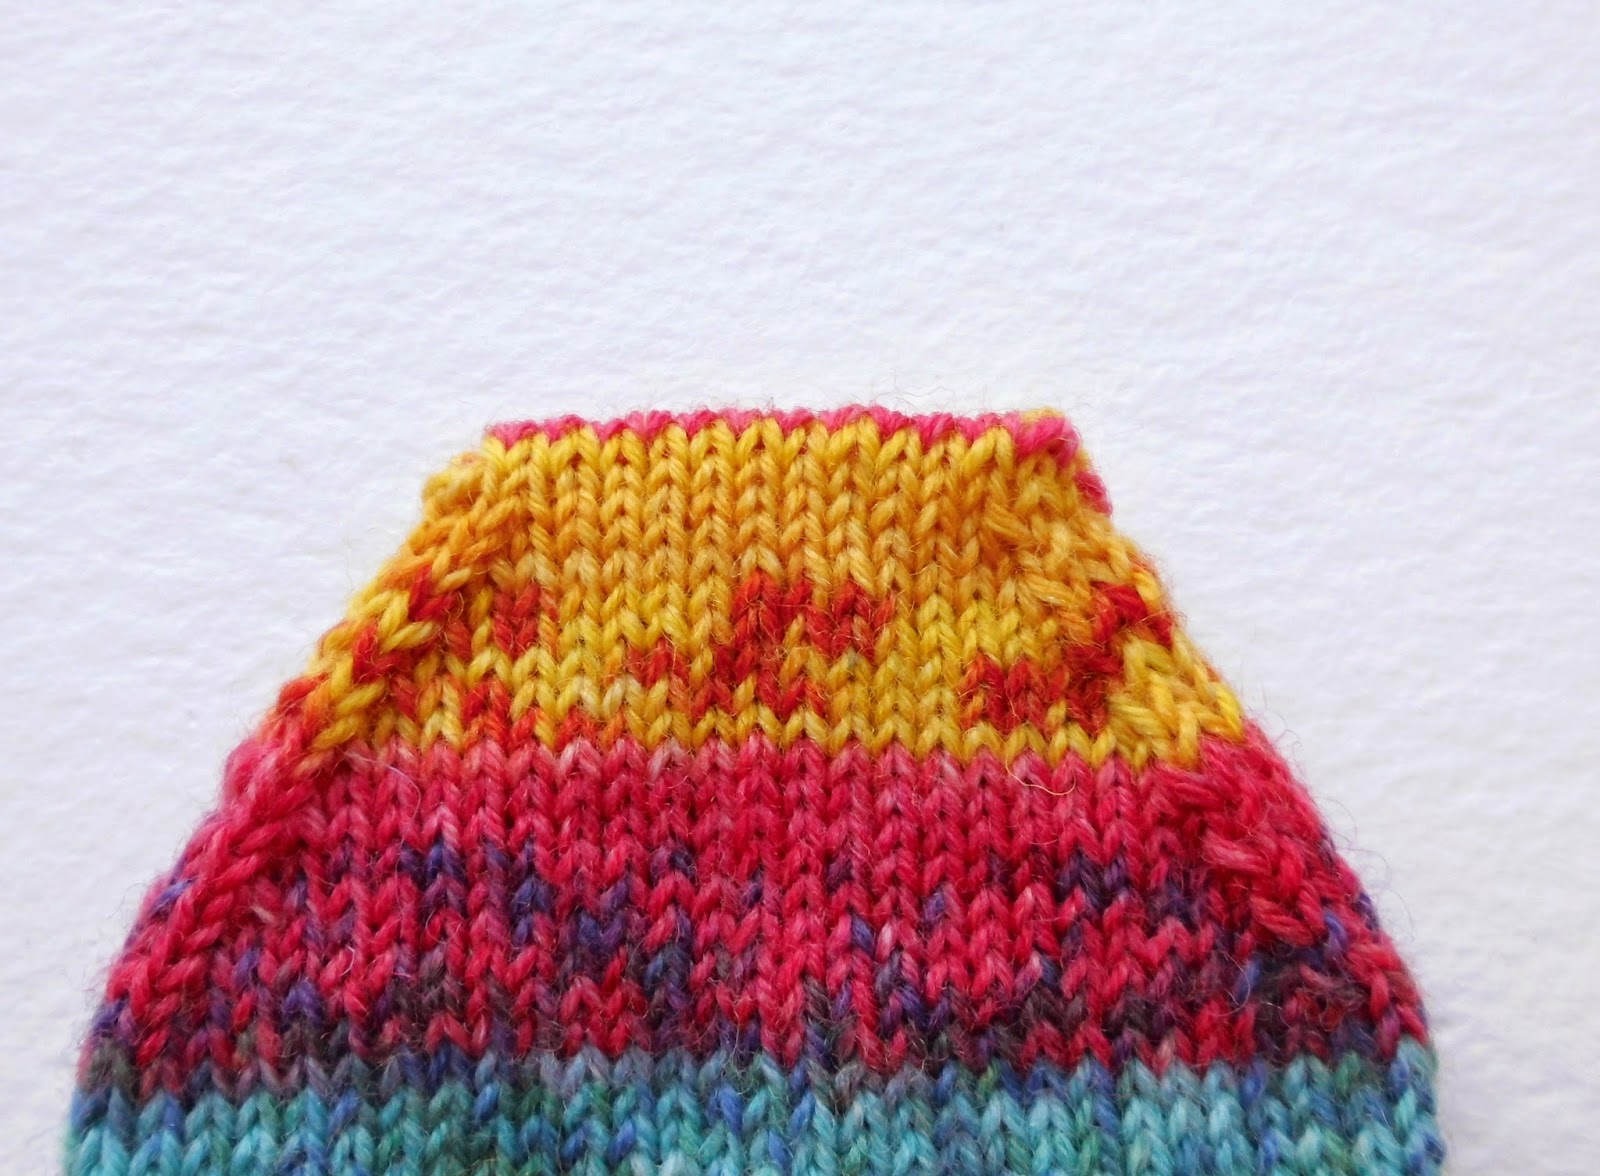 Winwick Mum: Beginner sock knitting: Sockalong - Week 3 - Foot, toe and ...